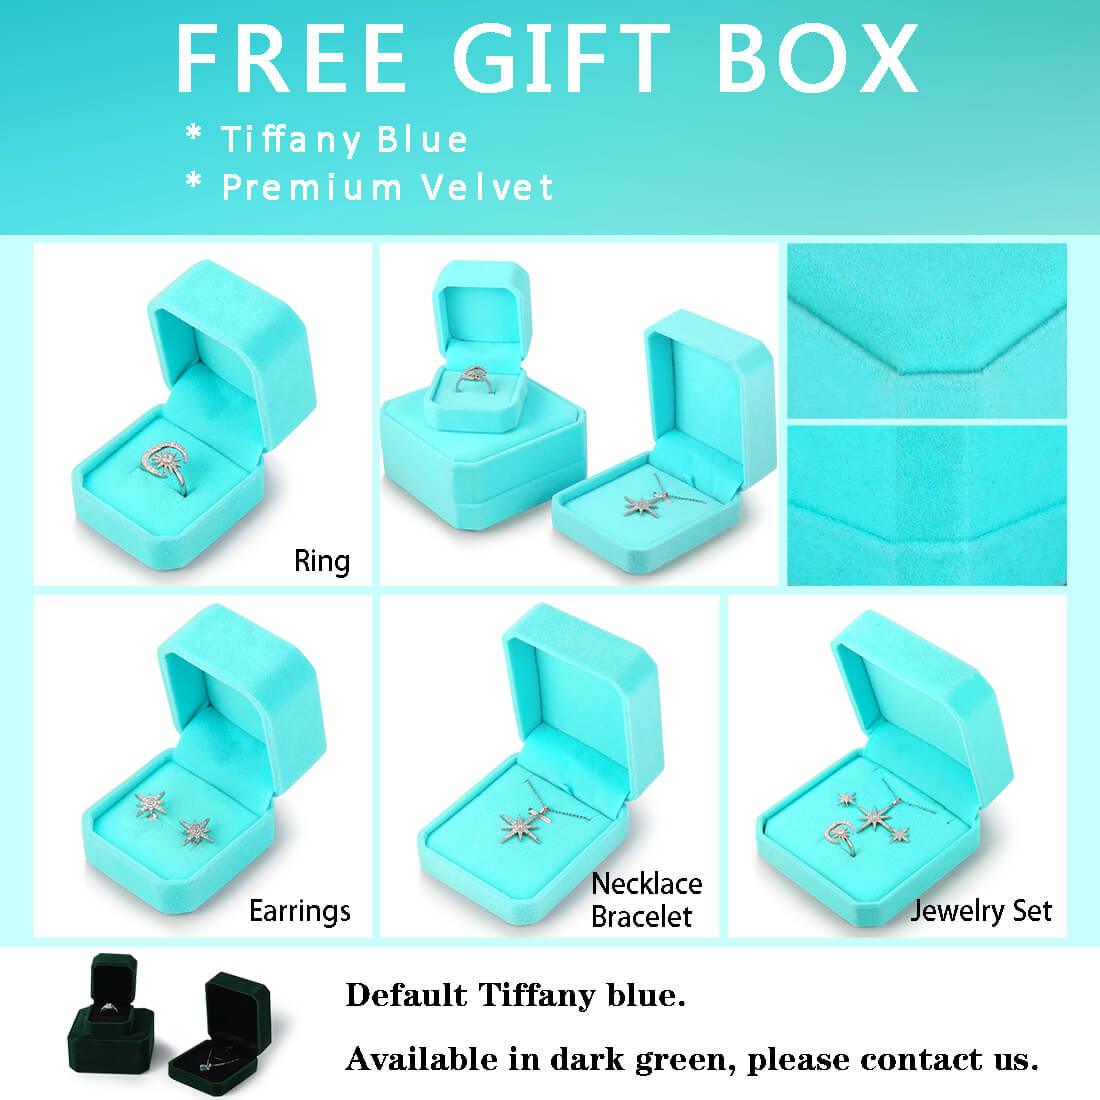 3D Cube Birthstone March Aquamarine Jewelry Set 3PCS - Jewelry Set - Aurora Tears